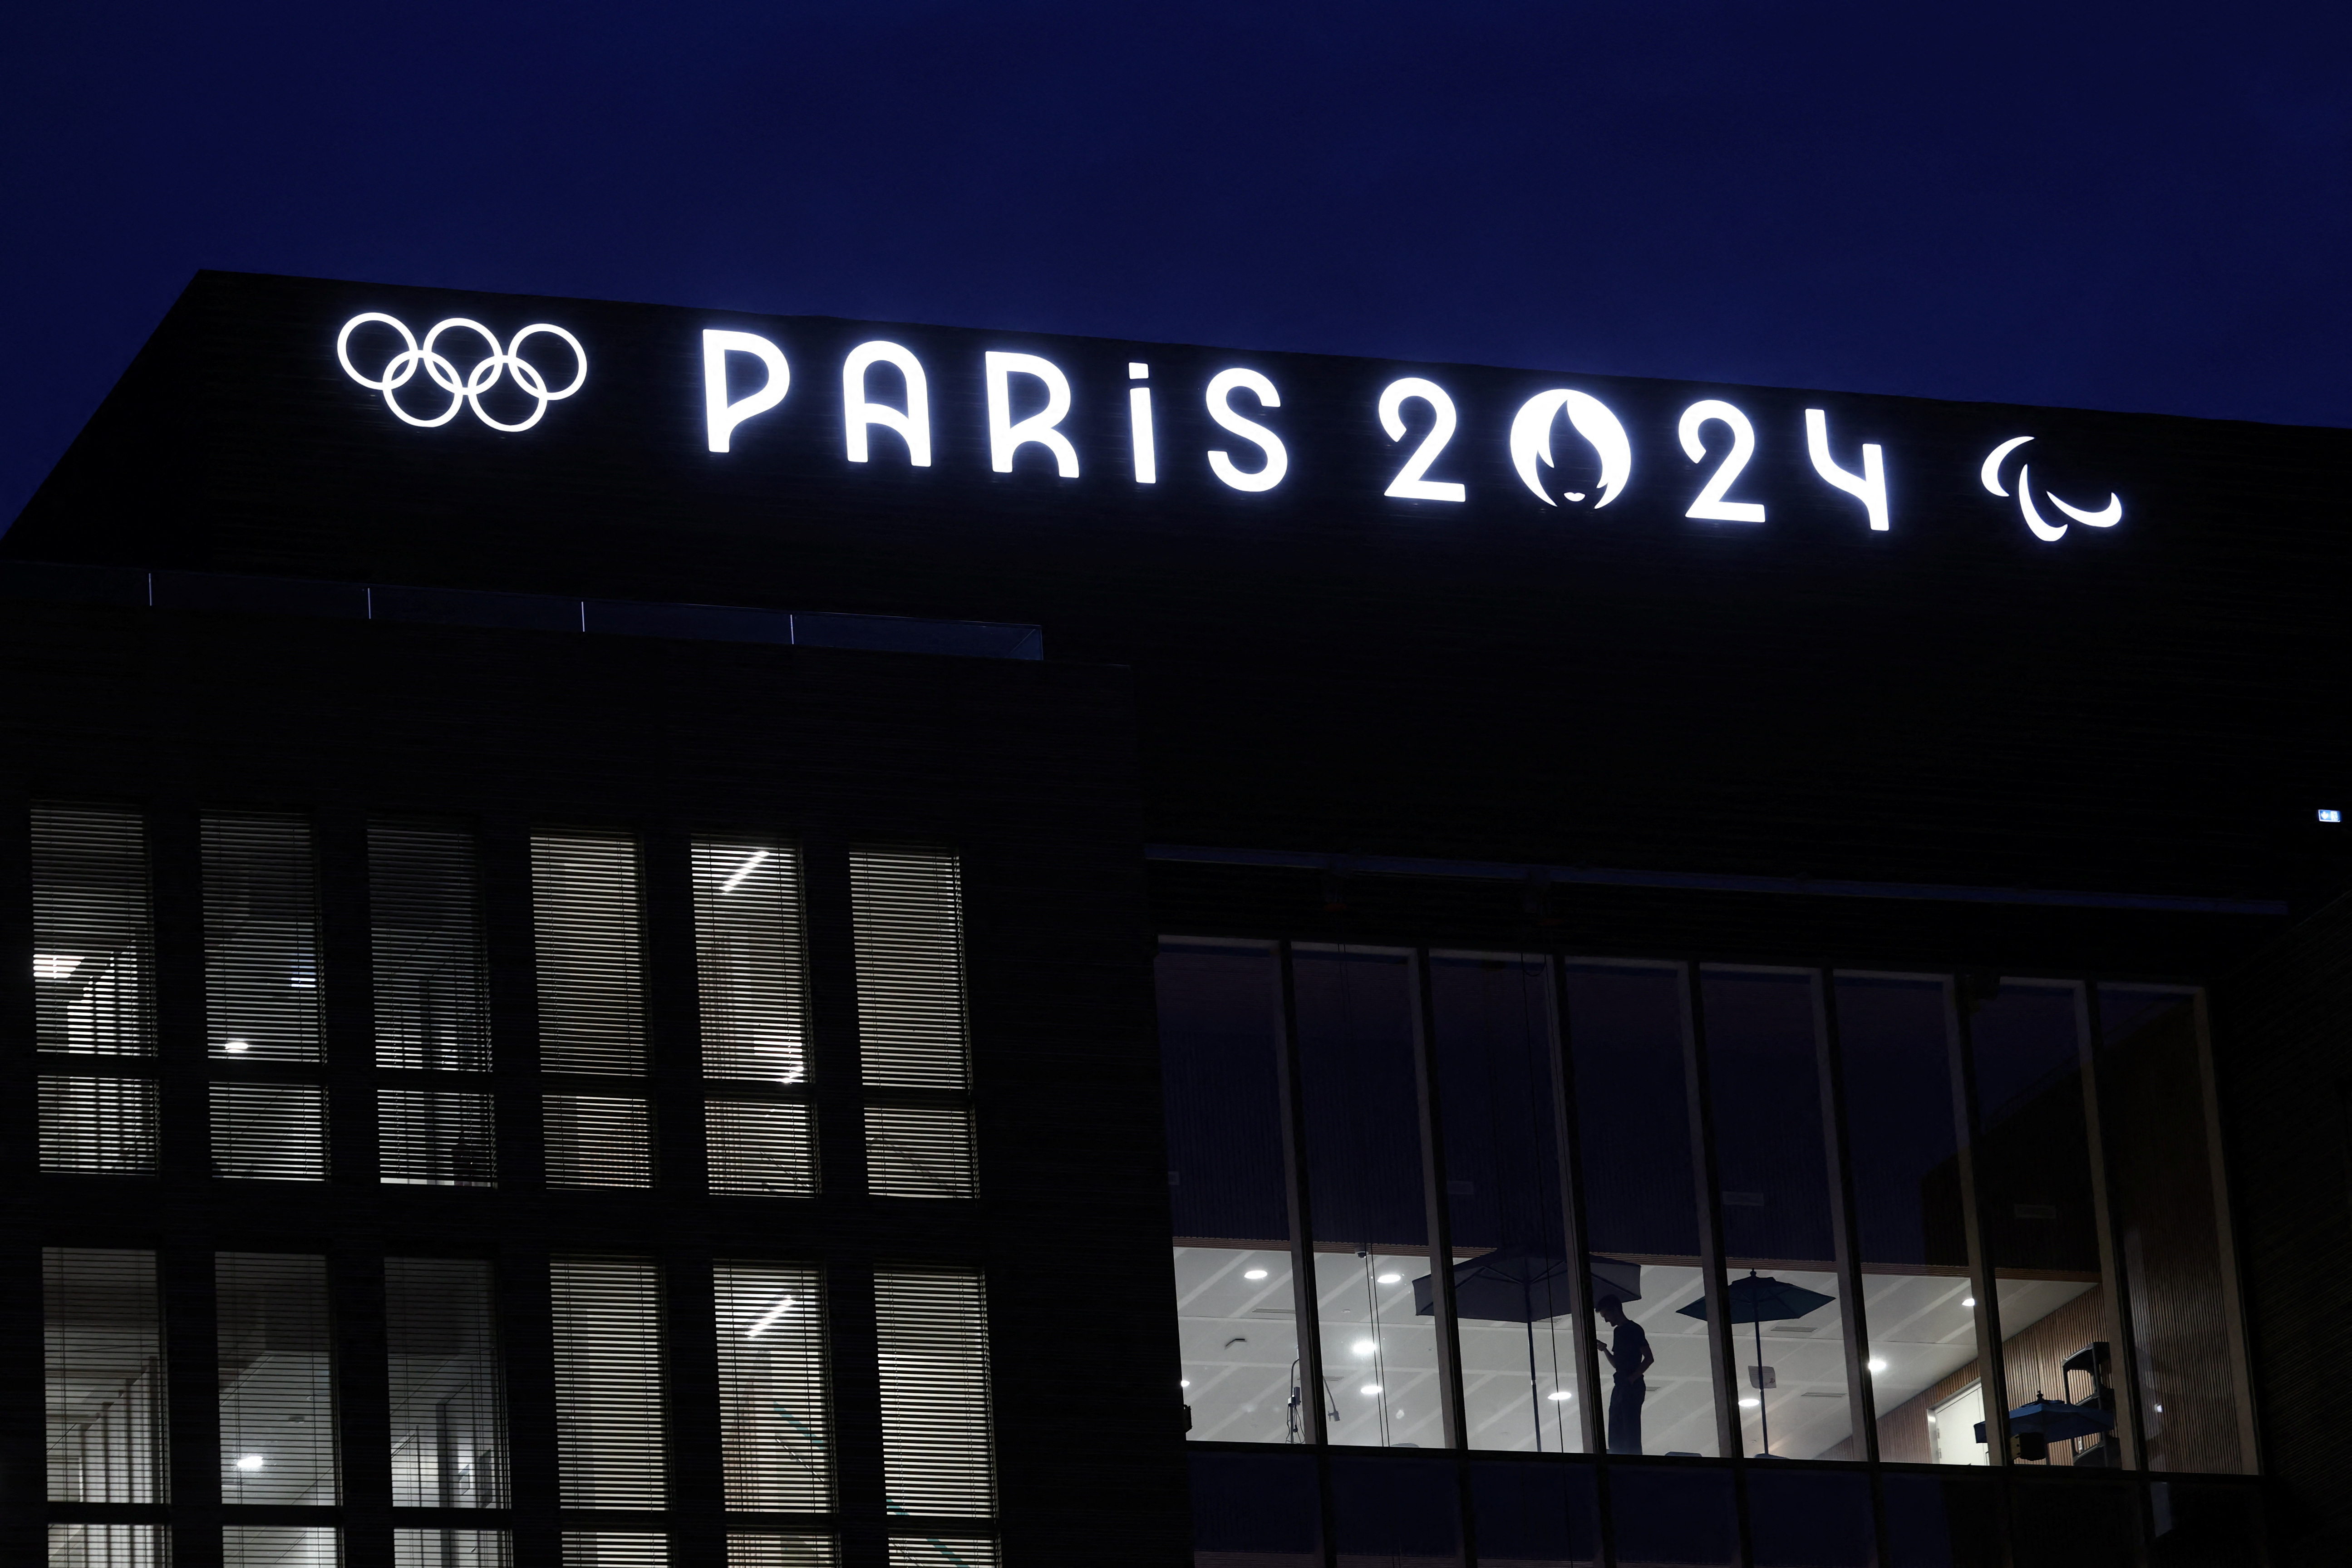 Paris 2024 Olympics headquarters